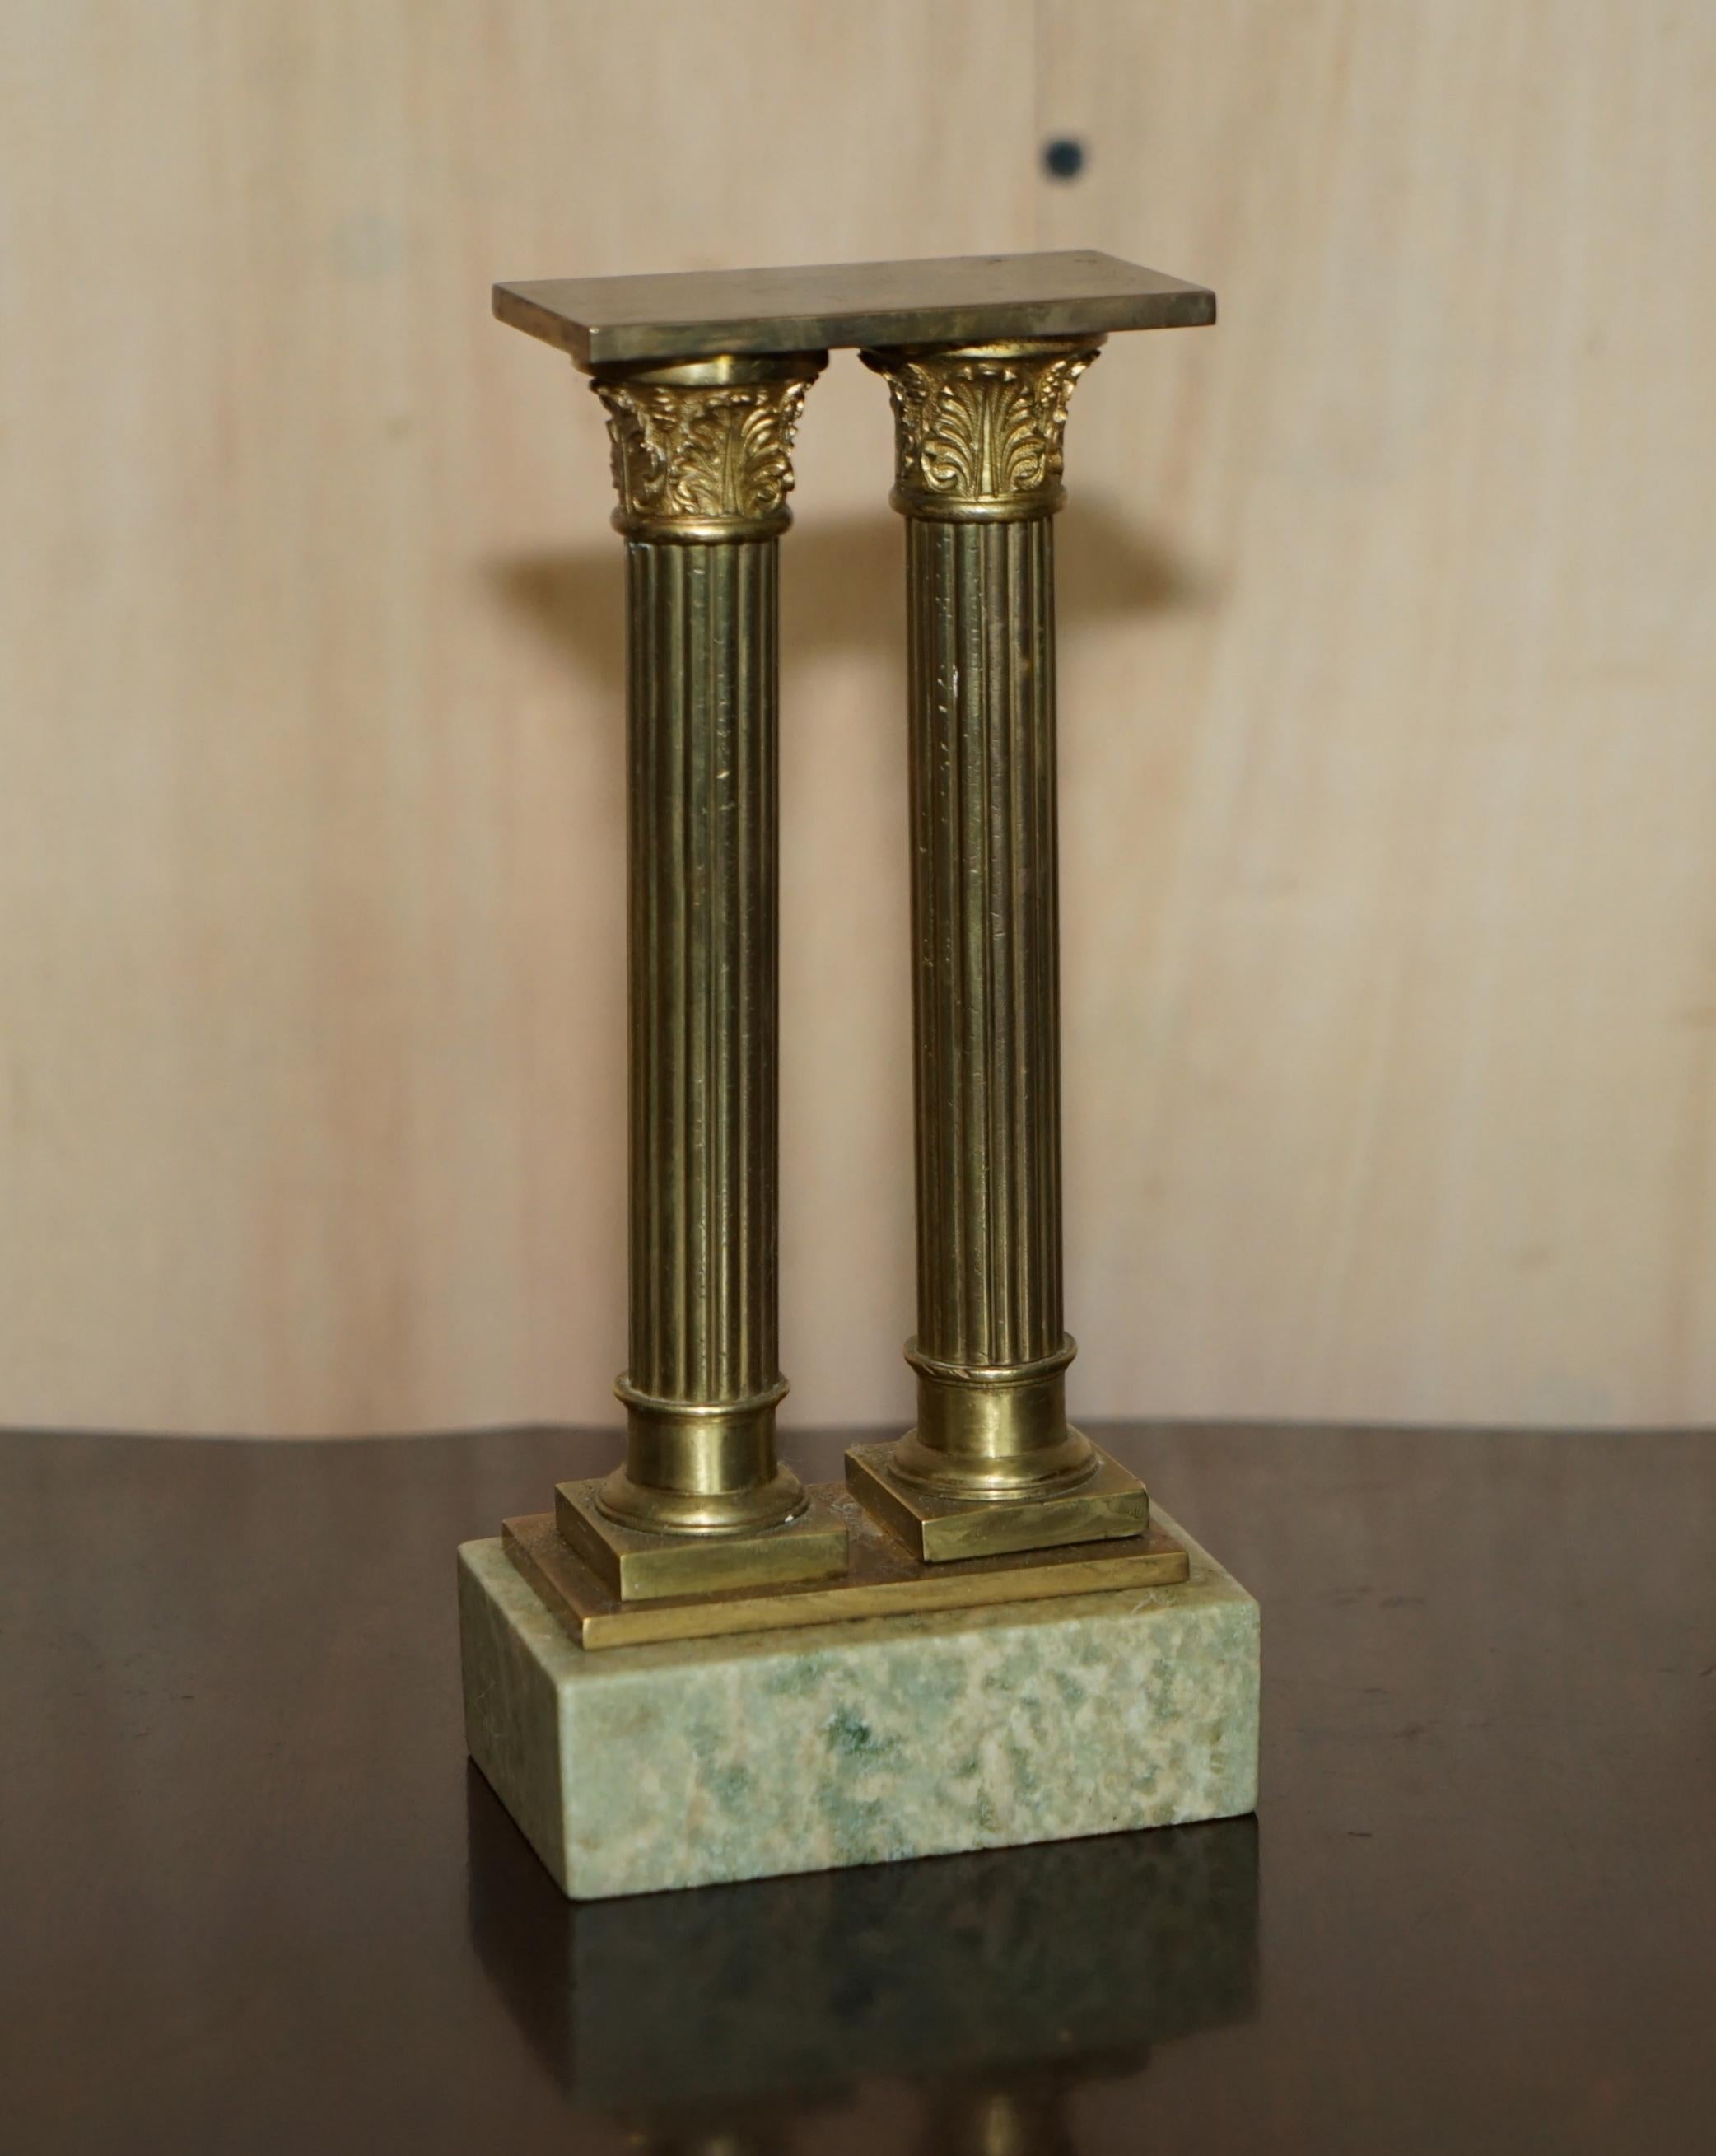 Wir sind erfreut, dieses äußerst sammelwürdige Paar originaler viktorianischer Marmor- und Messingstatuen der römischen Ruine zum Verkauf anzubieten.

Ein wundervolles Originalpaar in Schreibtischgröße und sehr sammelwürdig. Diese römischen Säulen